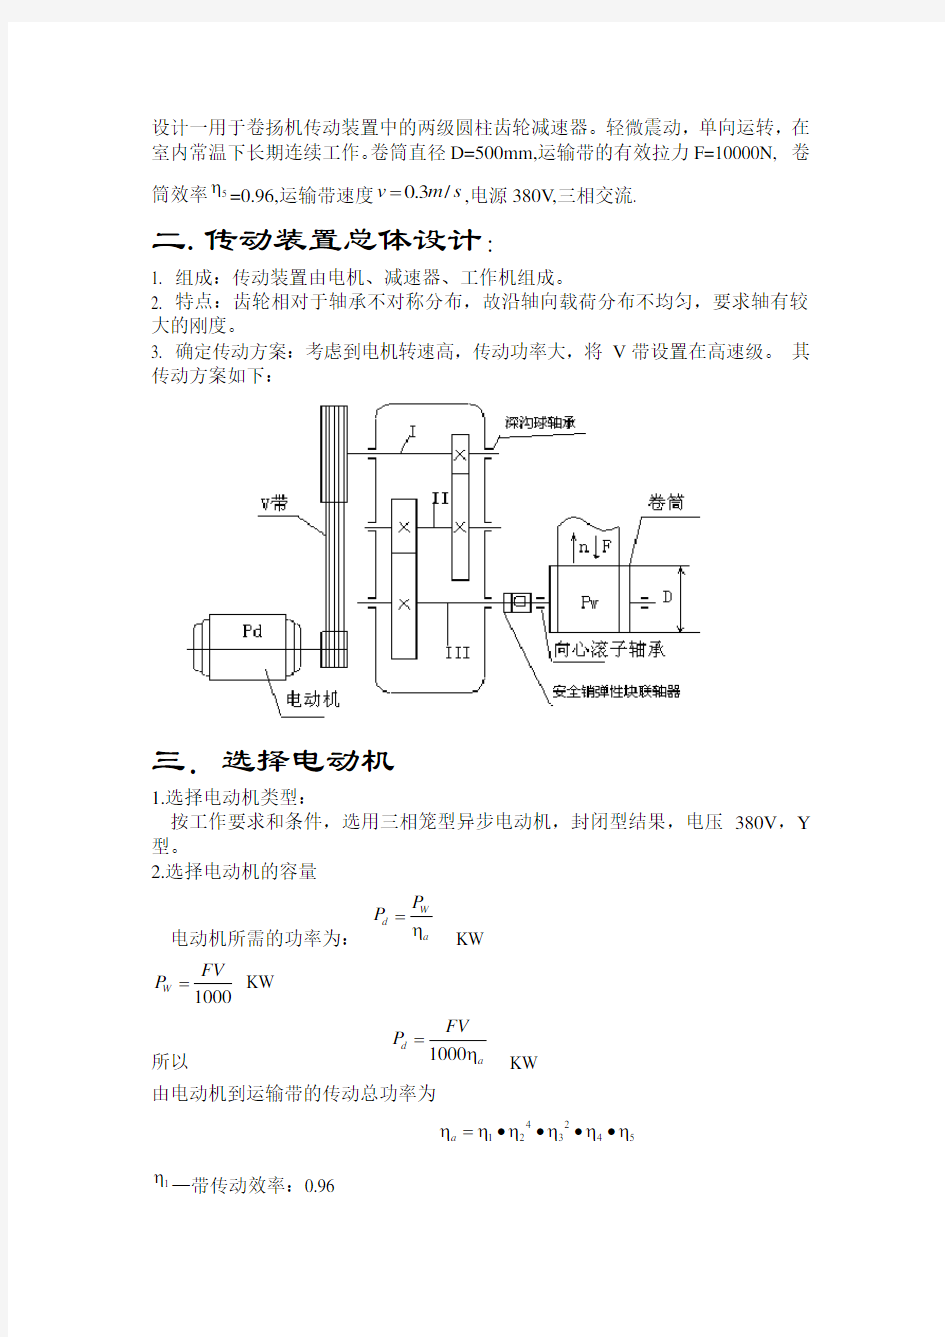 机械设计课程设计-二级展开式圆柱齿轮减速器(含全套图纸)